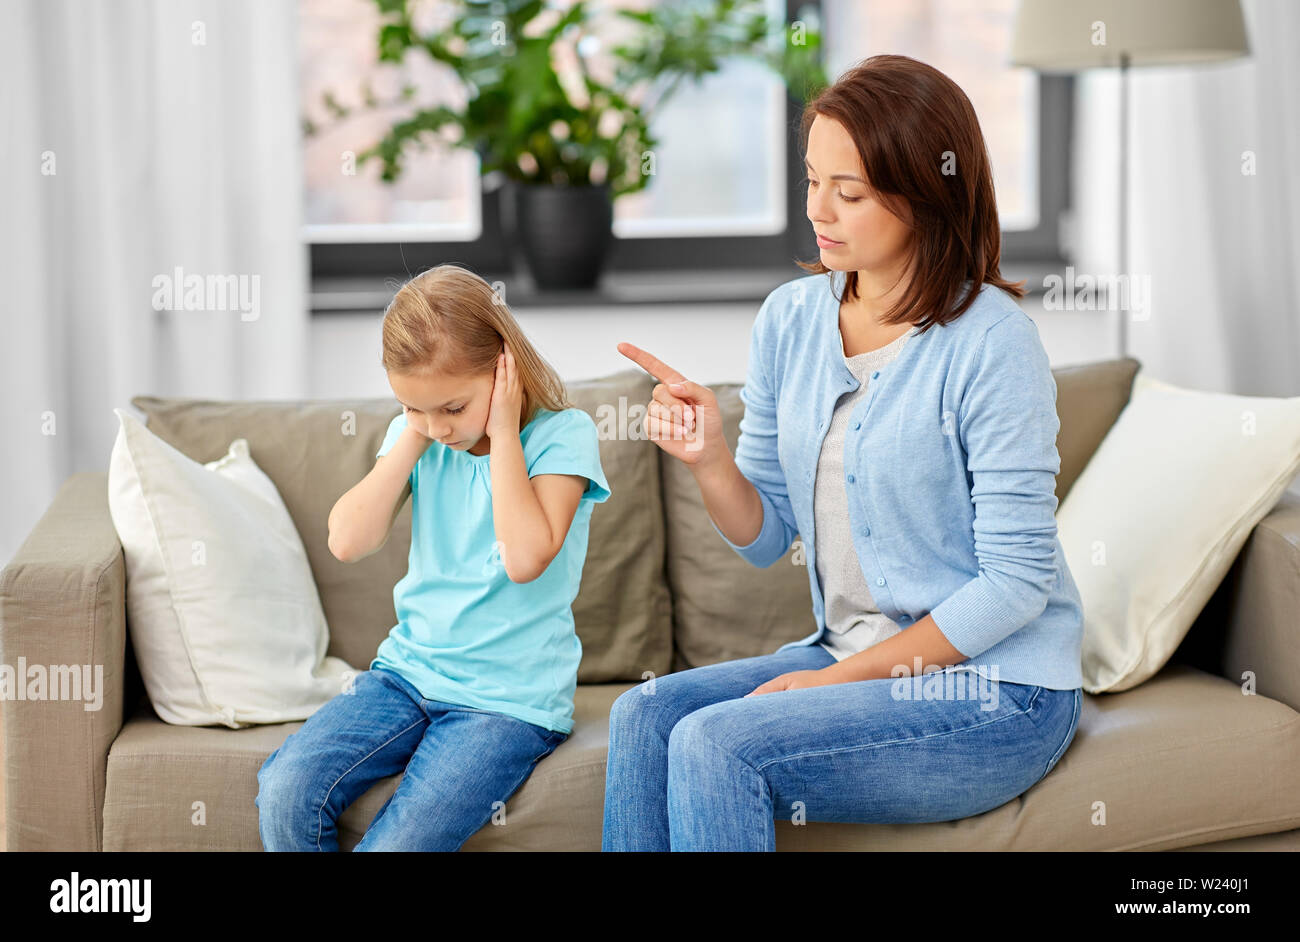 Arrabbiato madre scolding sua figlia a casa Foto Stock